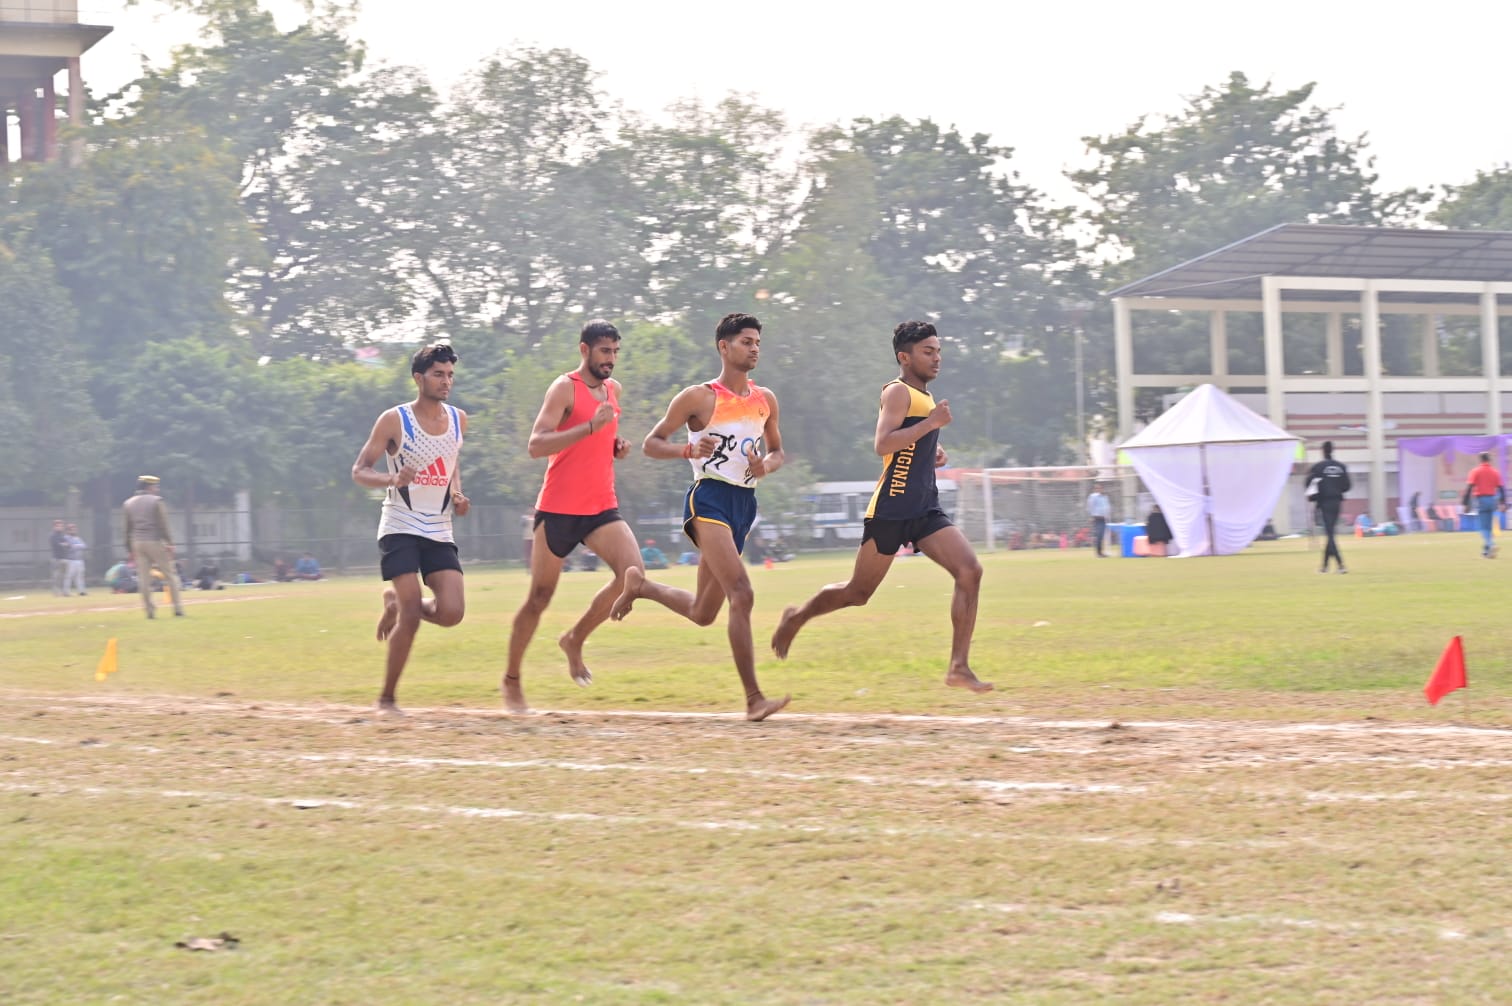 ग्रामीण खेल प्रतियोगिता के अंतर्गत एथलेटिक्स की विभिन्न स्पर्धाओं का किया गया आयोजन